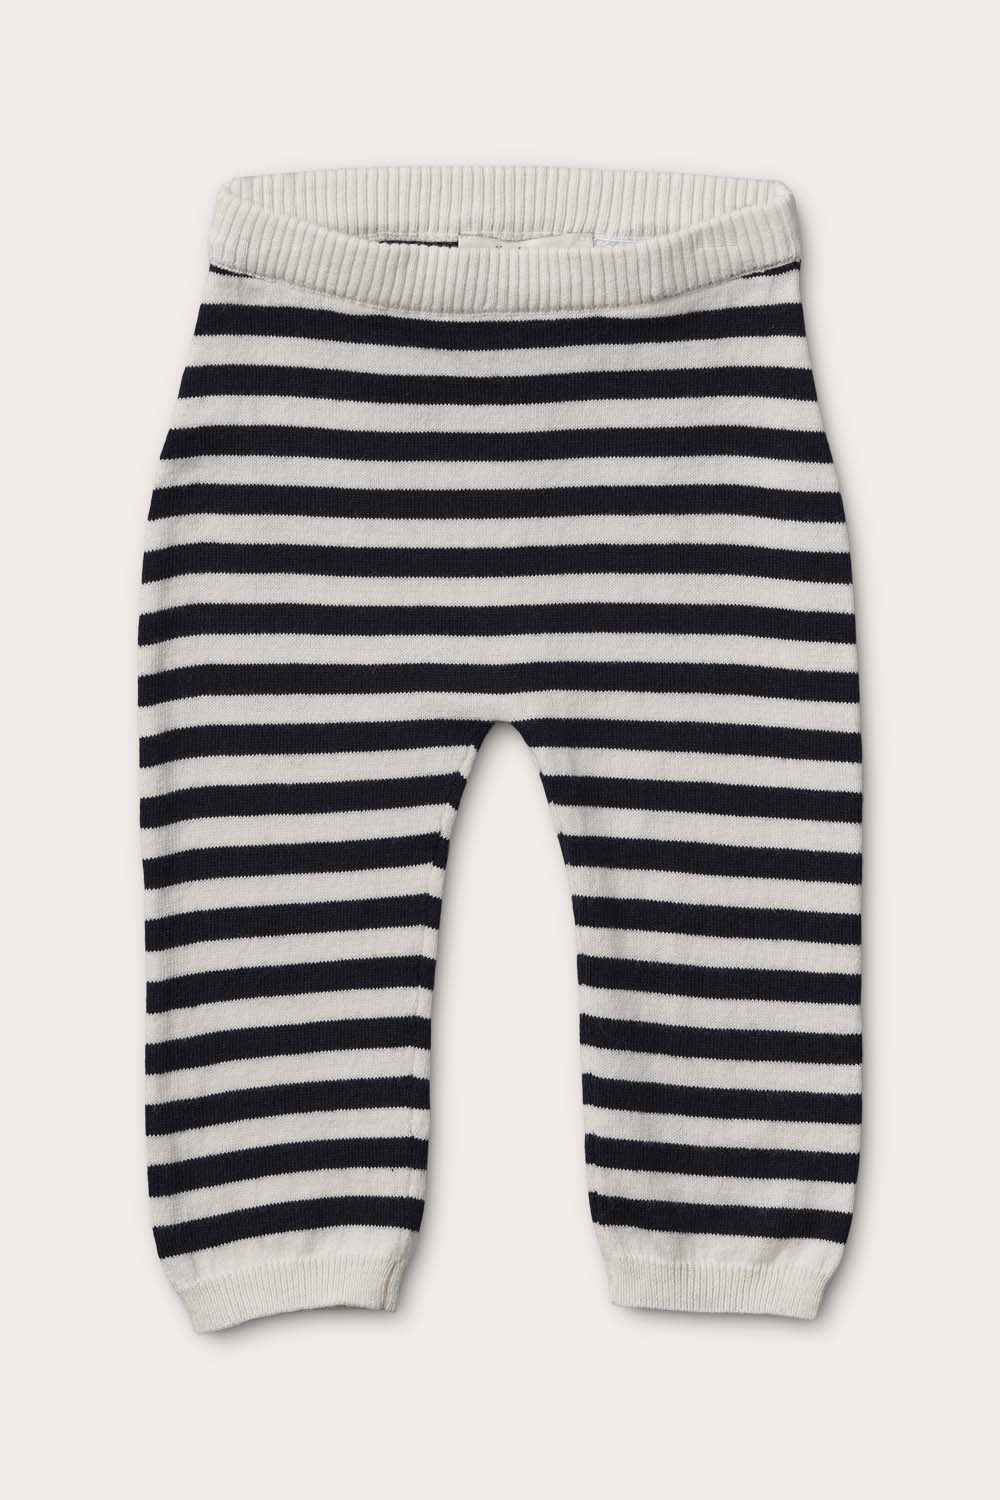 Little O'TAY Alix Pants Stripe Pants Off White/Navy